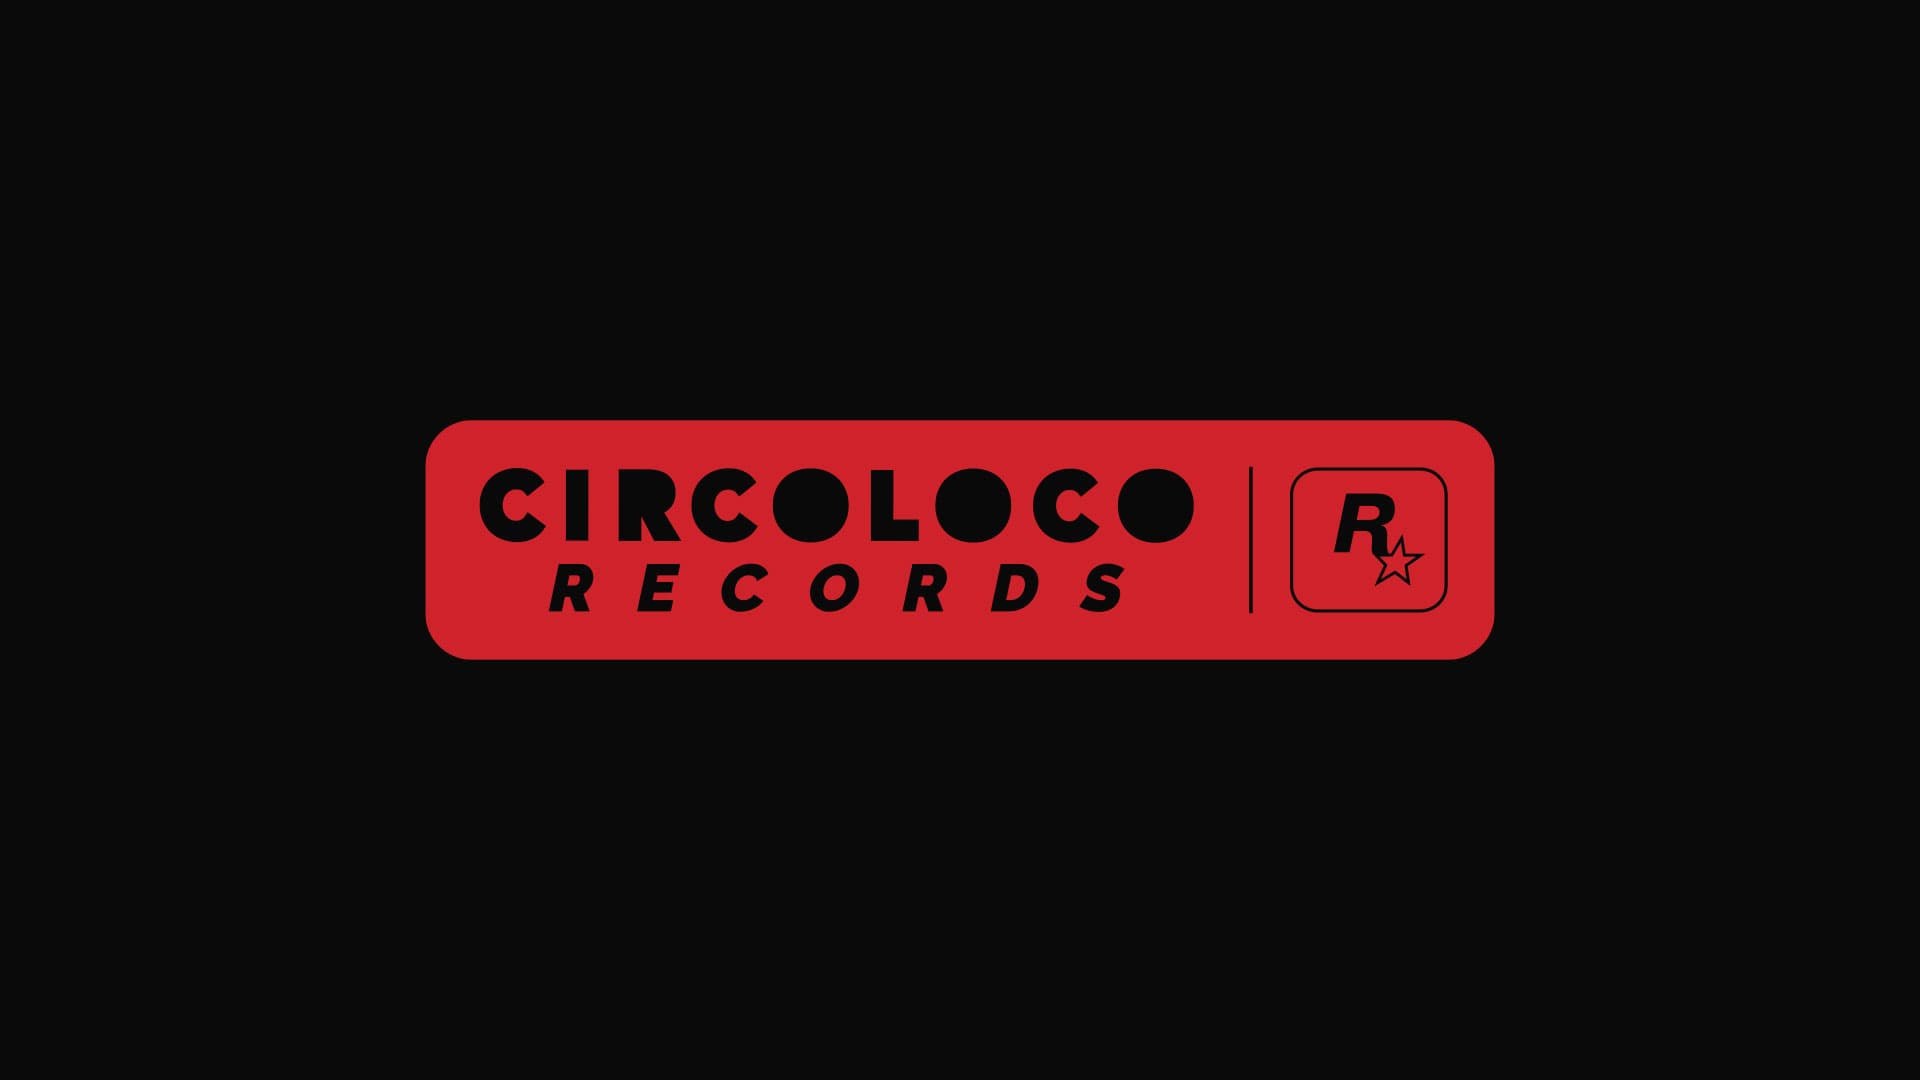 Circoloco Records: Rockstar Games se une à Circoloco para lançar nova label